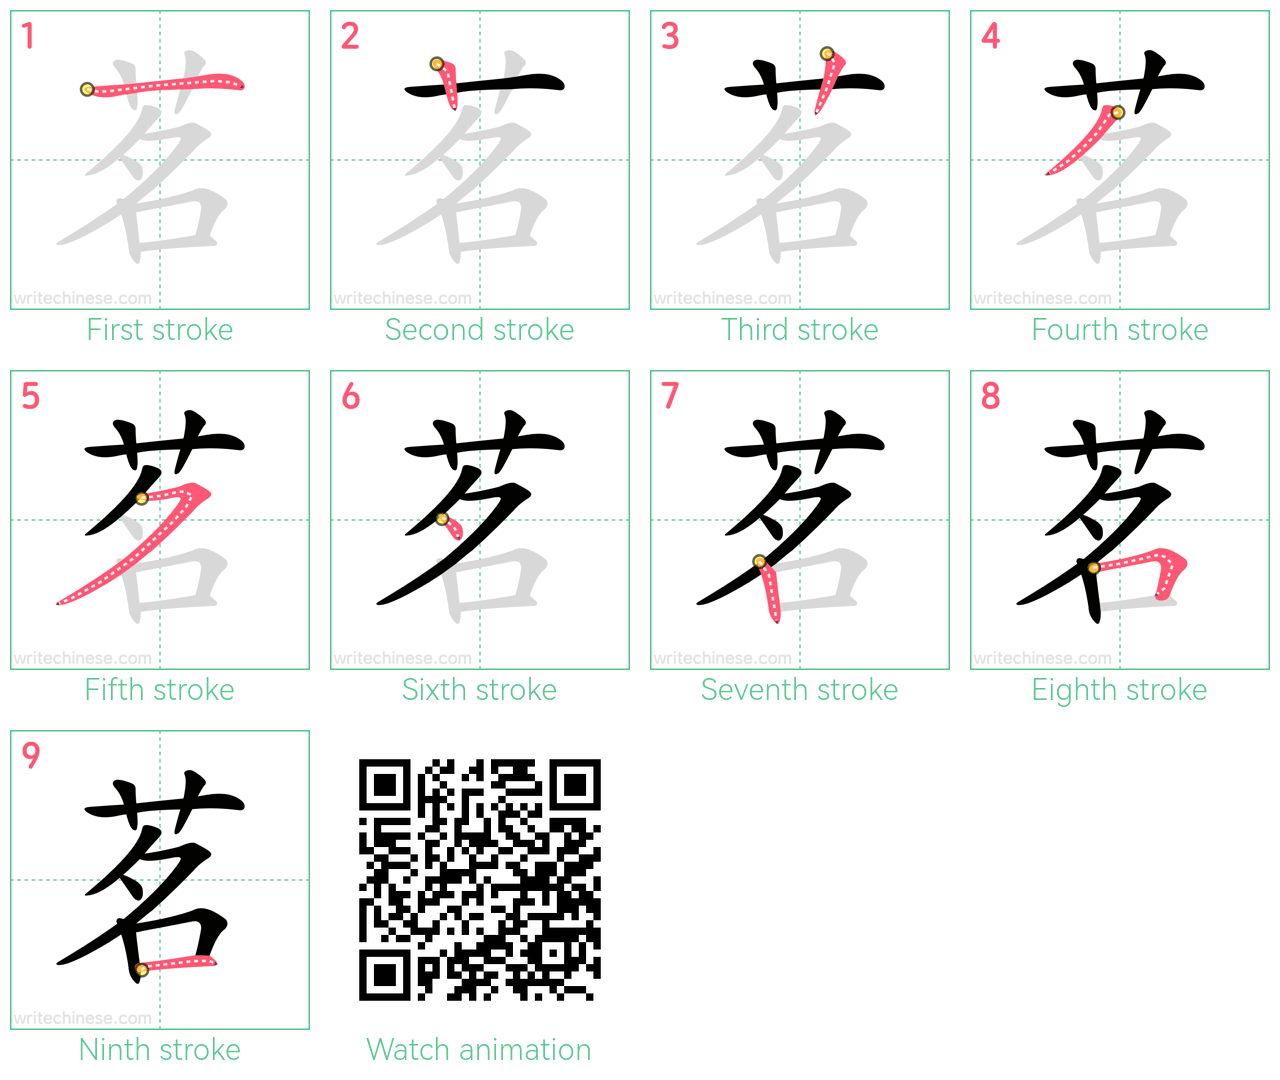 茗 step-by-step stroke order diagrams